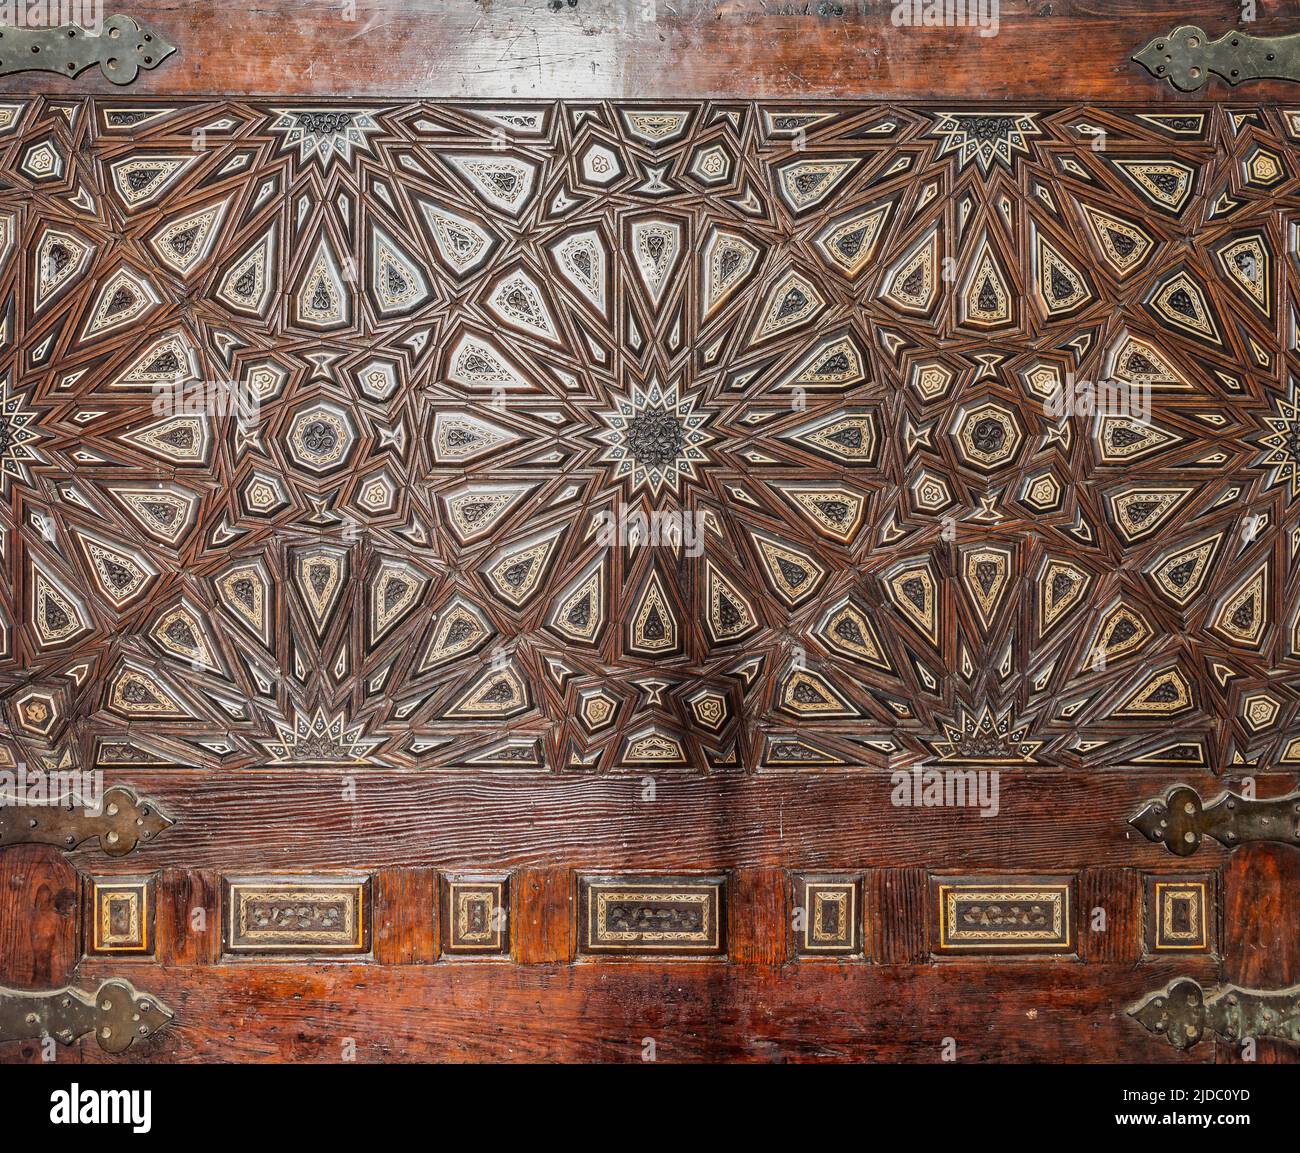 Decoraciones arabescas de madera lengua y ranura ensambladas, incrustadas con marfil y ébano, en el banco de lectura de Quran, en la histórica mezquita pública de Al Rifai, El Cairo, Egipto Foto de stock